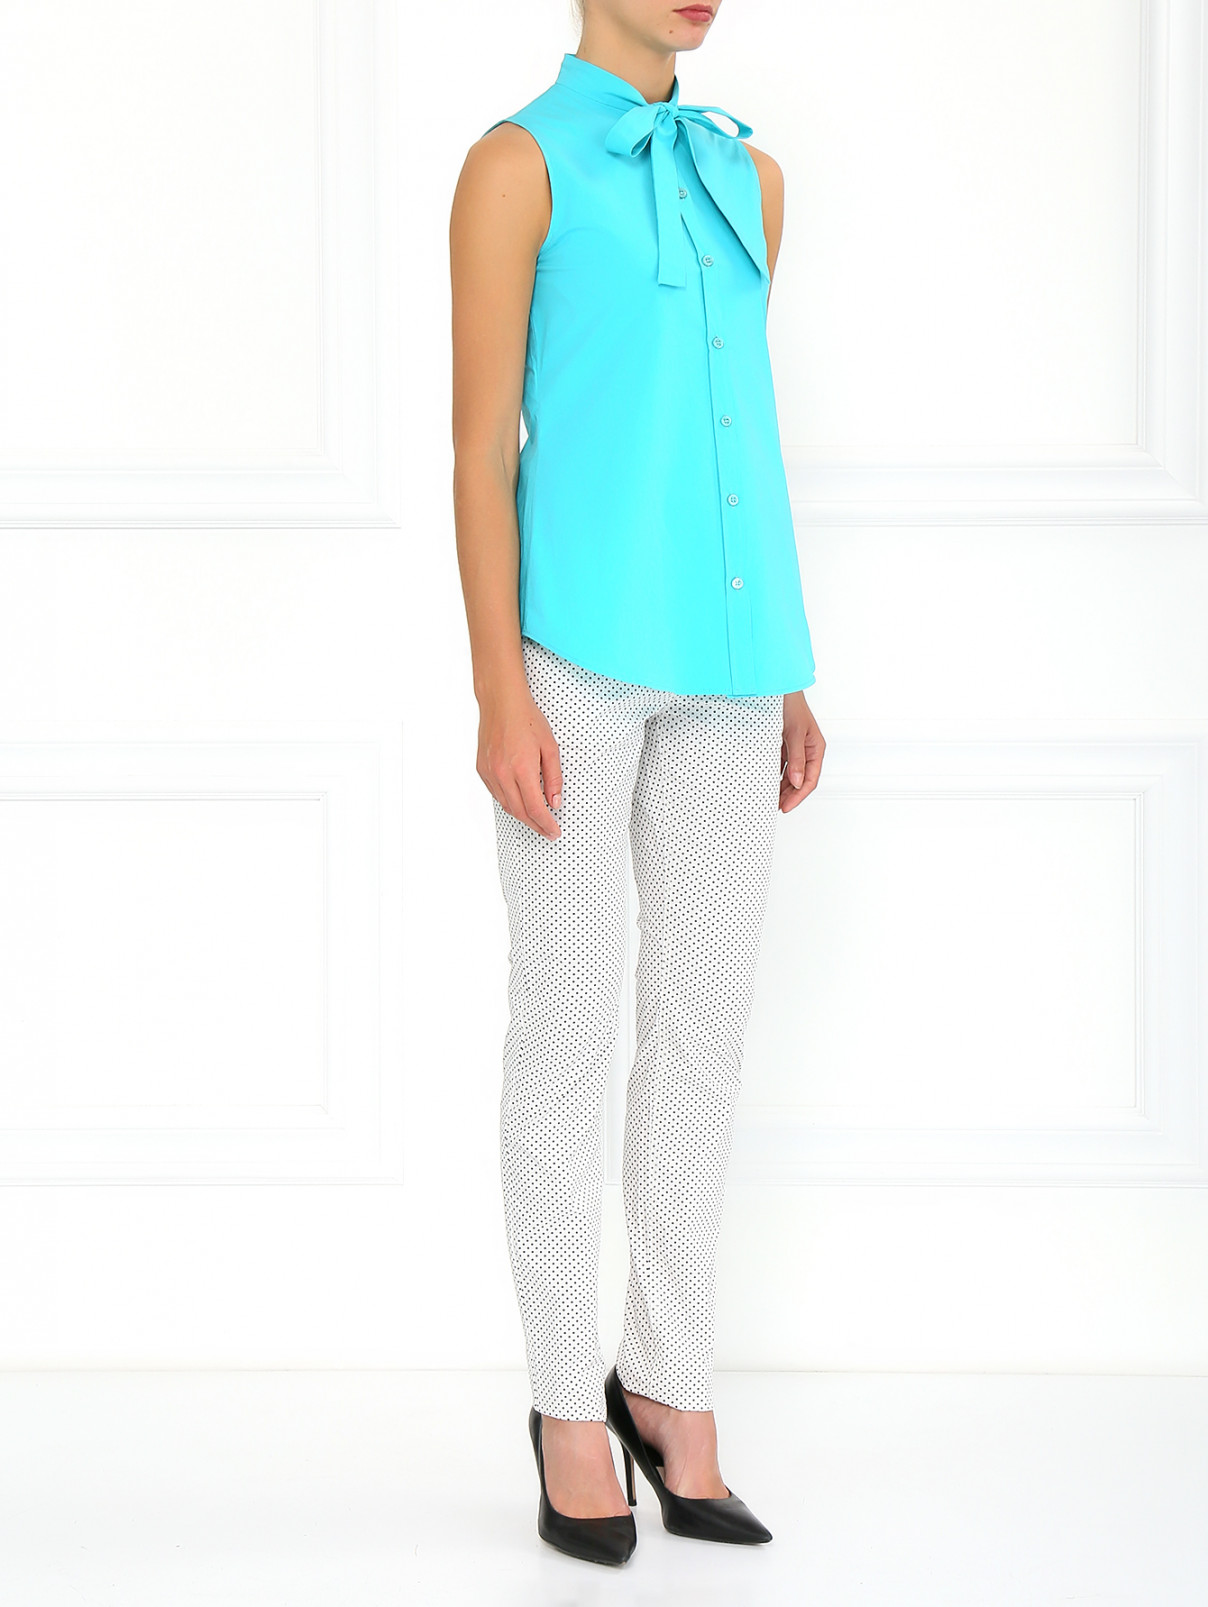 Хлопковая блуза Moschino Cheap&Chic  –  Модель Общий вид  – Цвет:  Синий